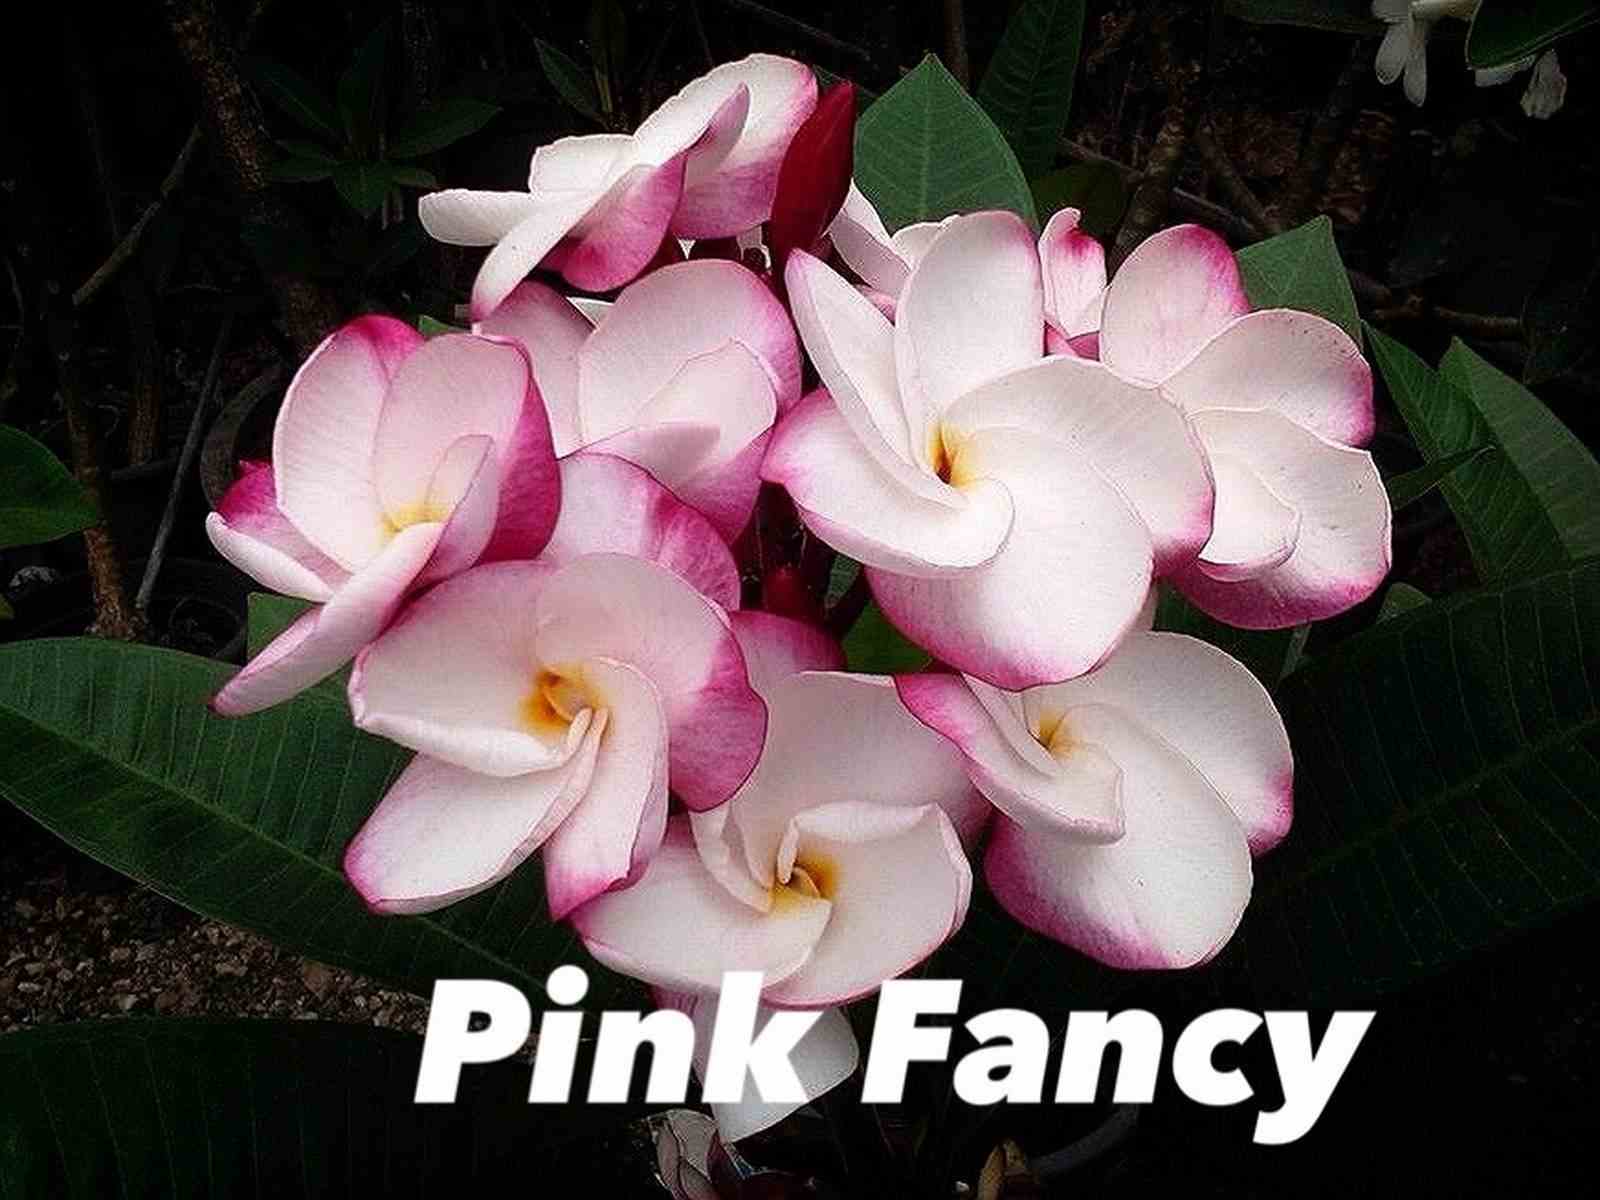 Plumeria rubra "pink fancy" (frangipanier) taille pot de 2 litres ? 20/30 cm -   blanc et rose